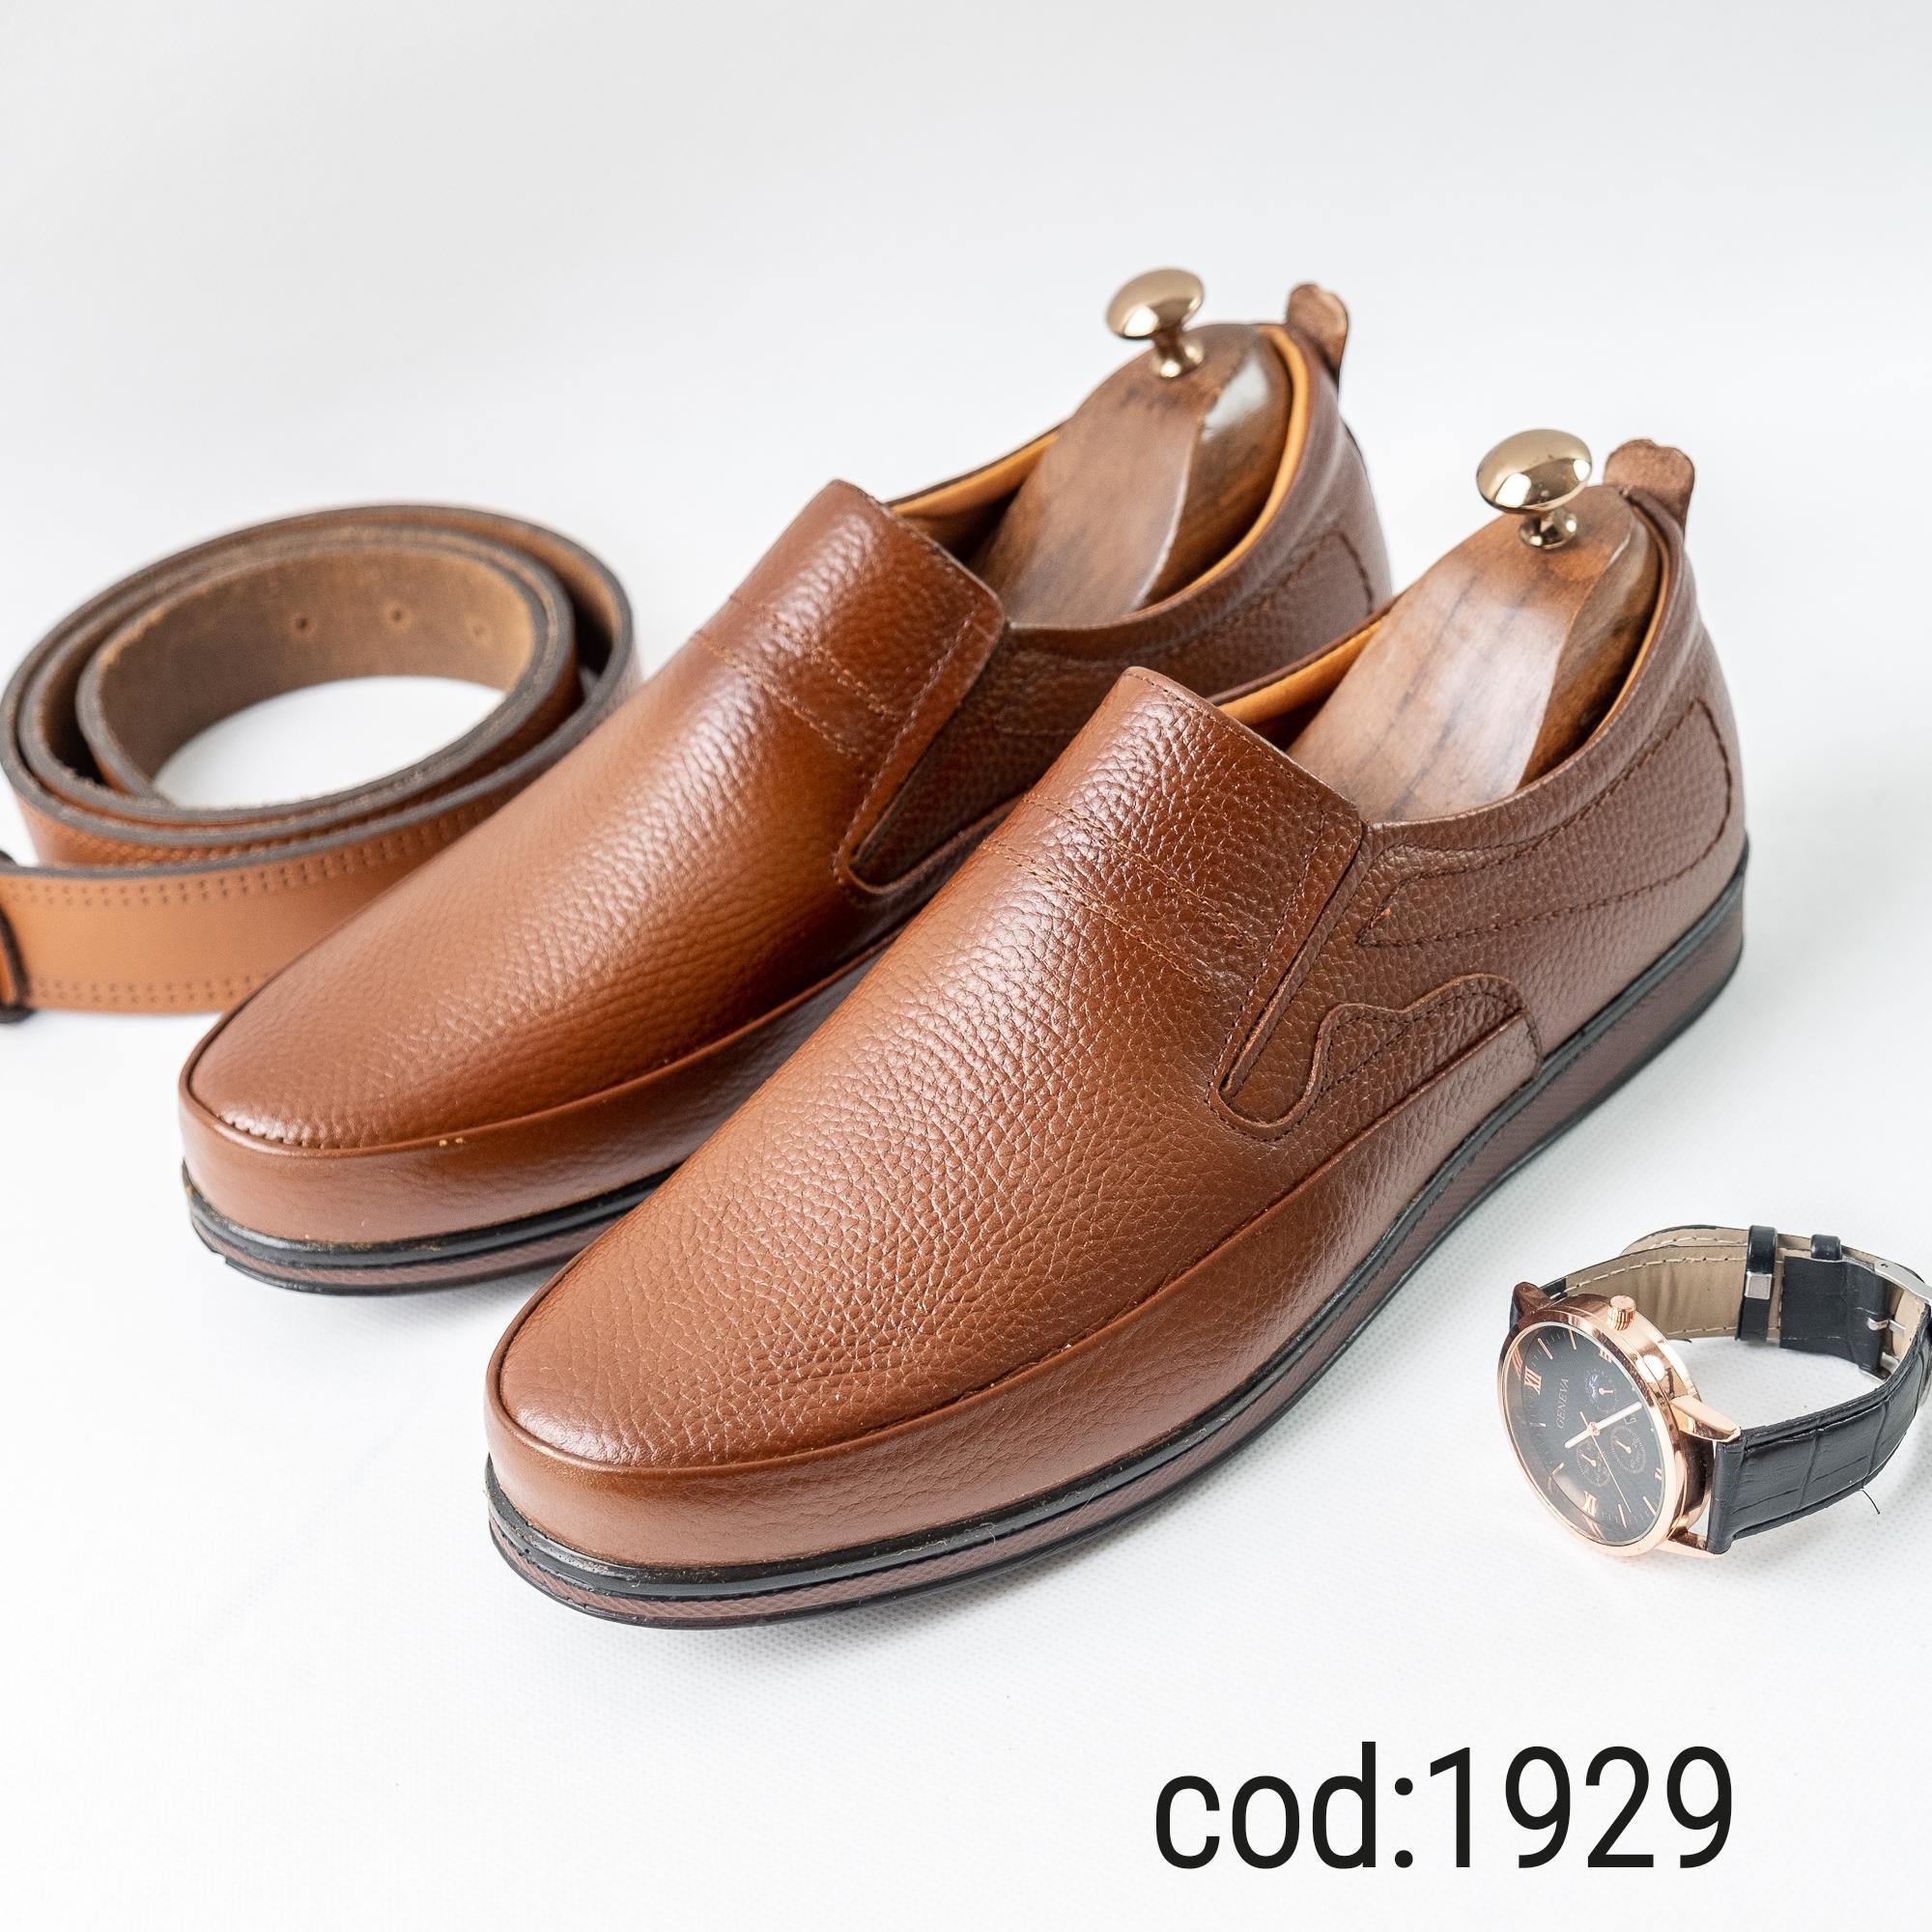  کفش مردانه بدون بند چرم قهوه ای1929 